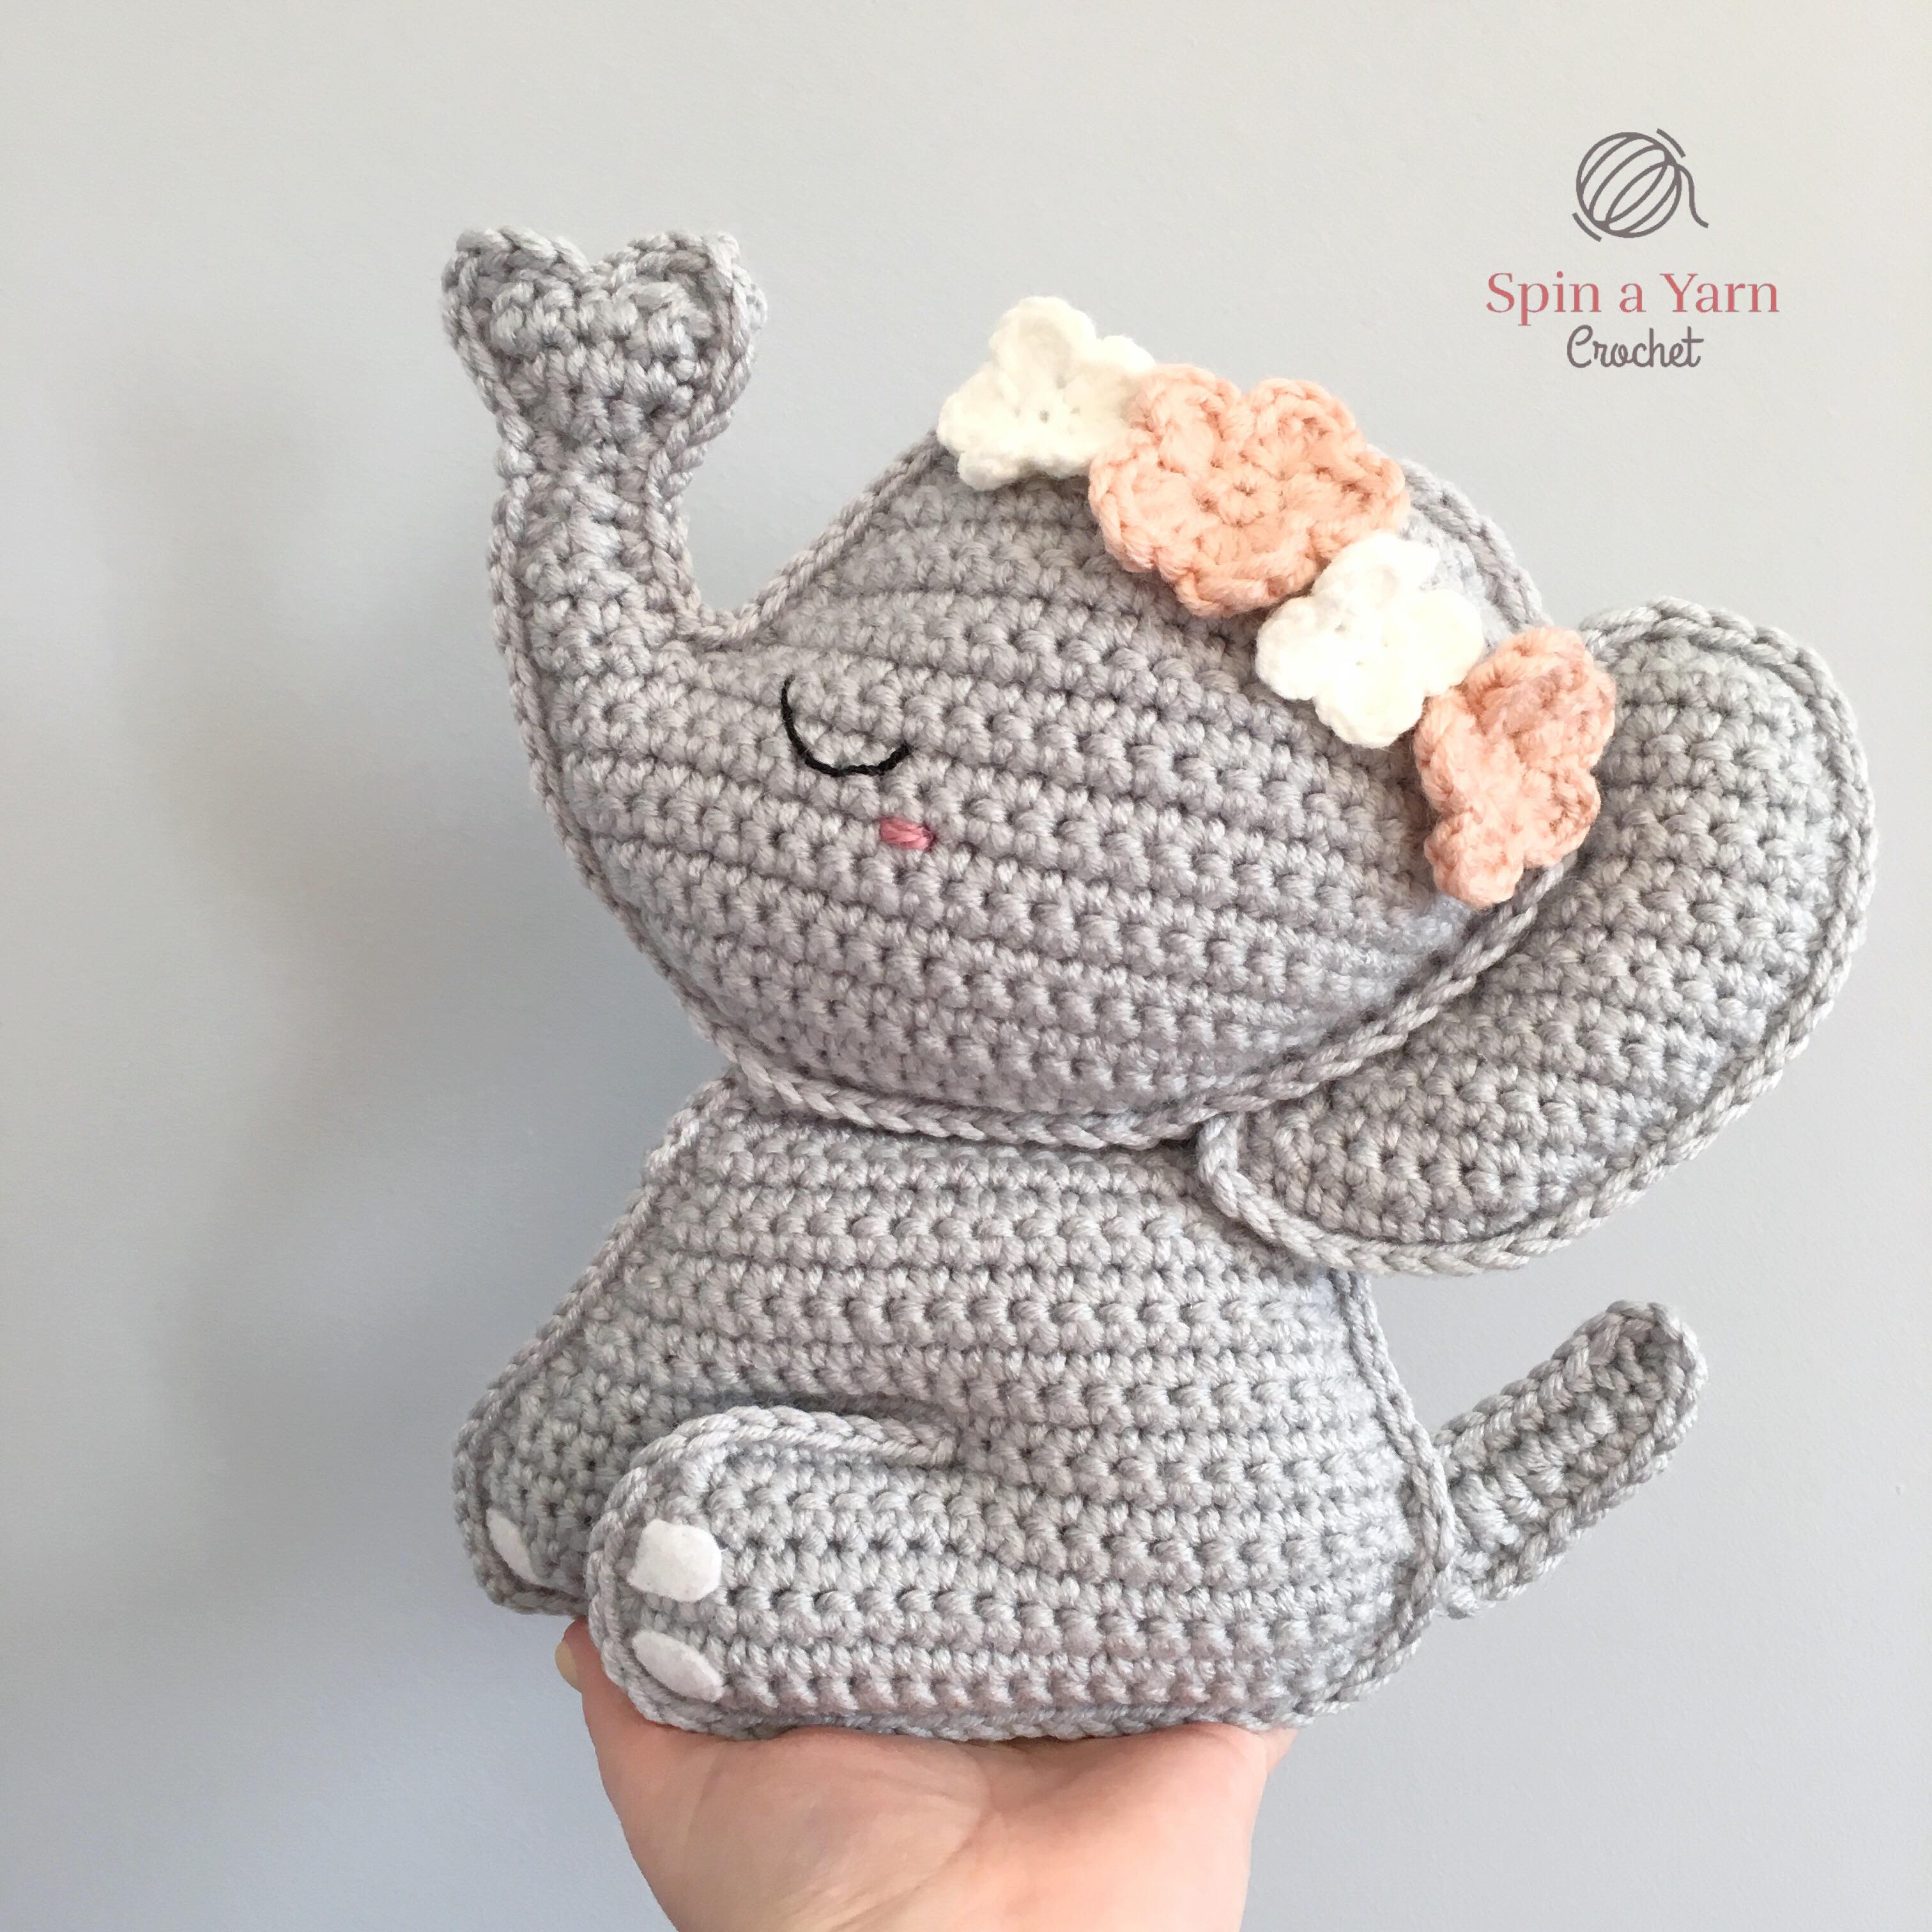 Elephant Amigurumi Free Crochet Pattern • Spin a Yarn Crochet